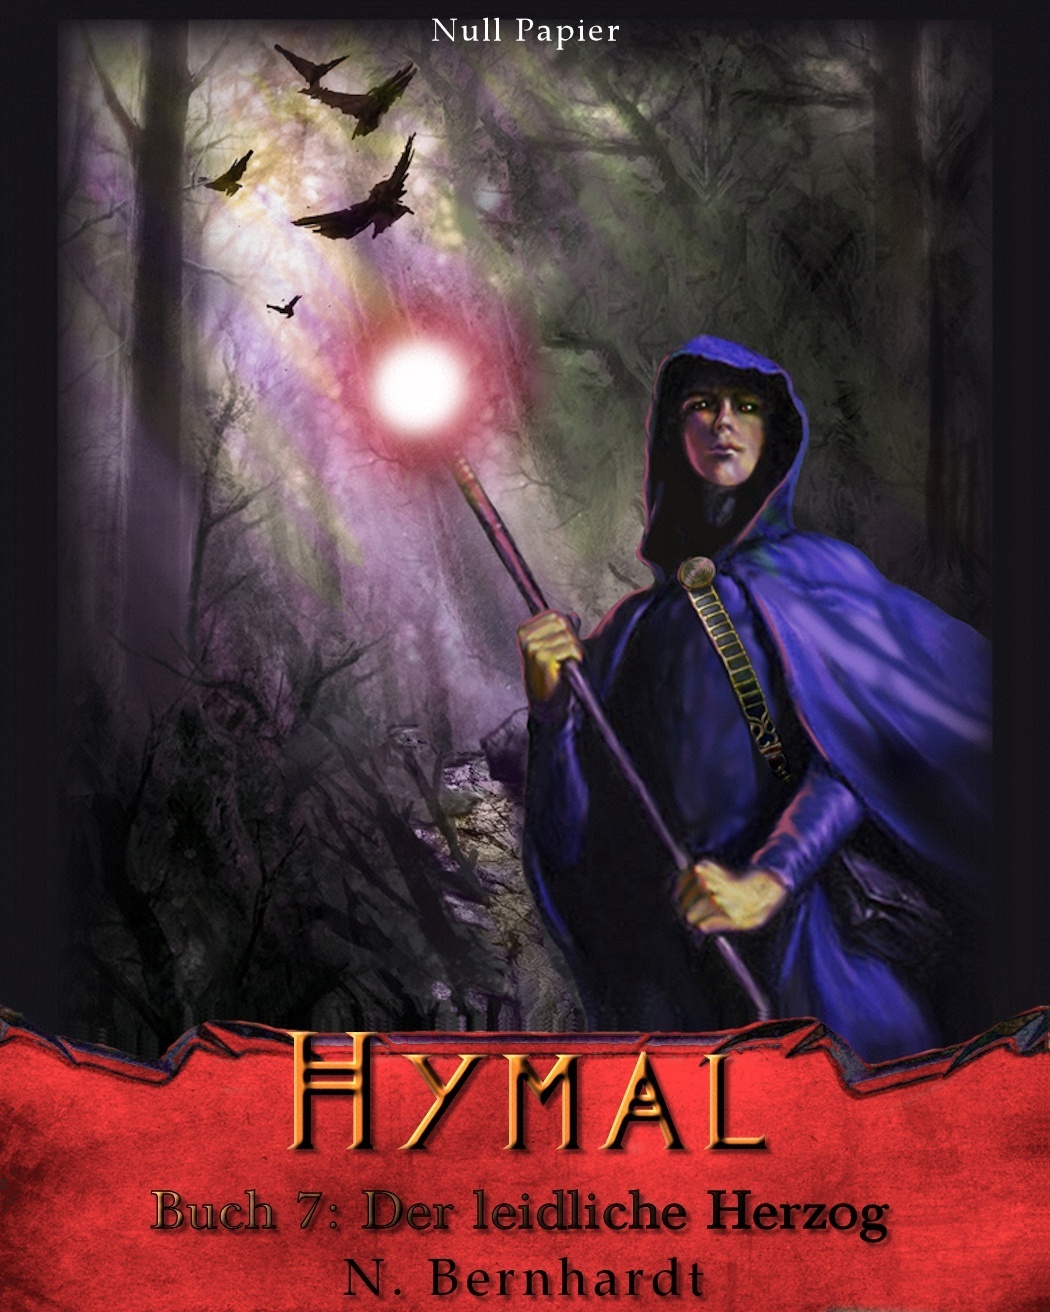 Der Hexer von Hymal, Buch VII - Der leidliche Herzog